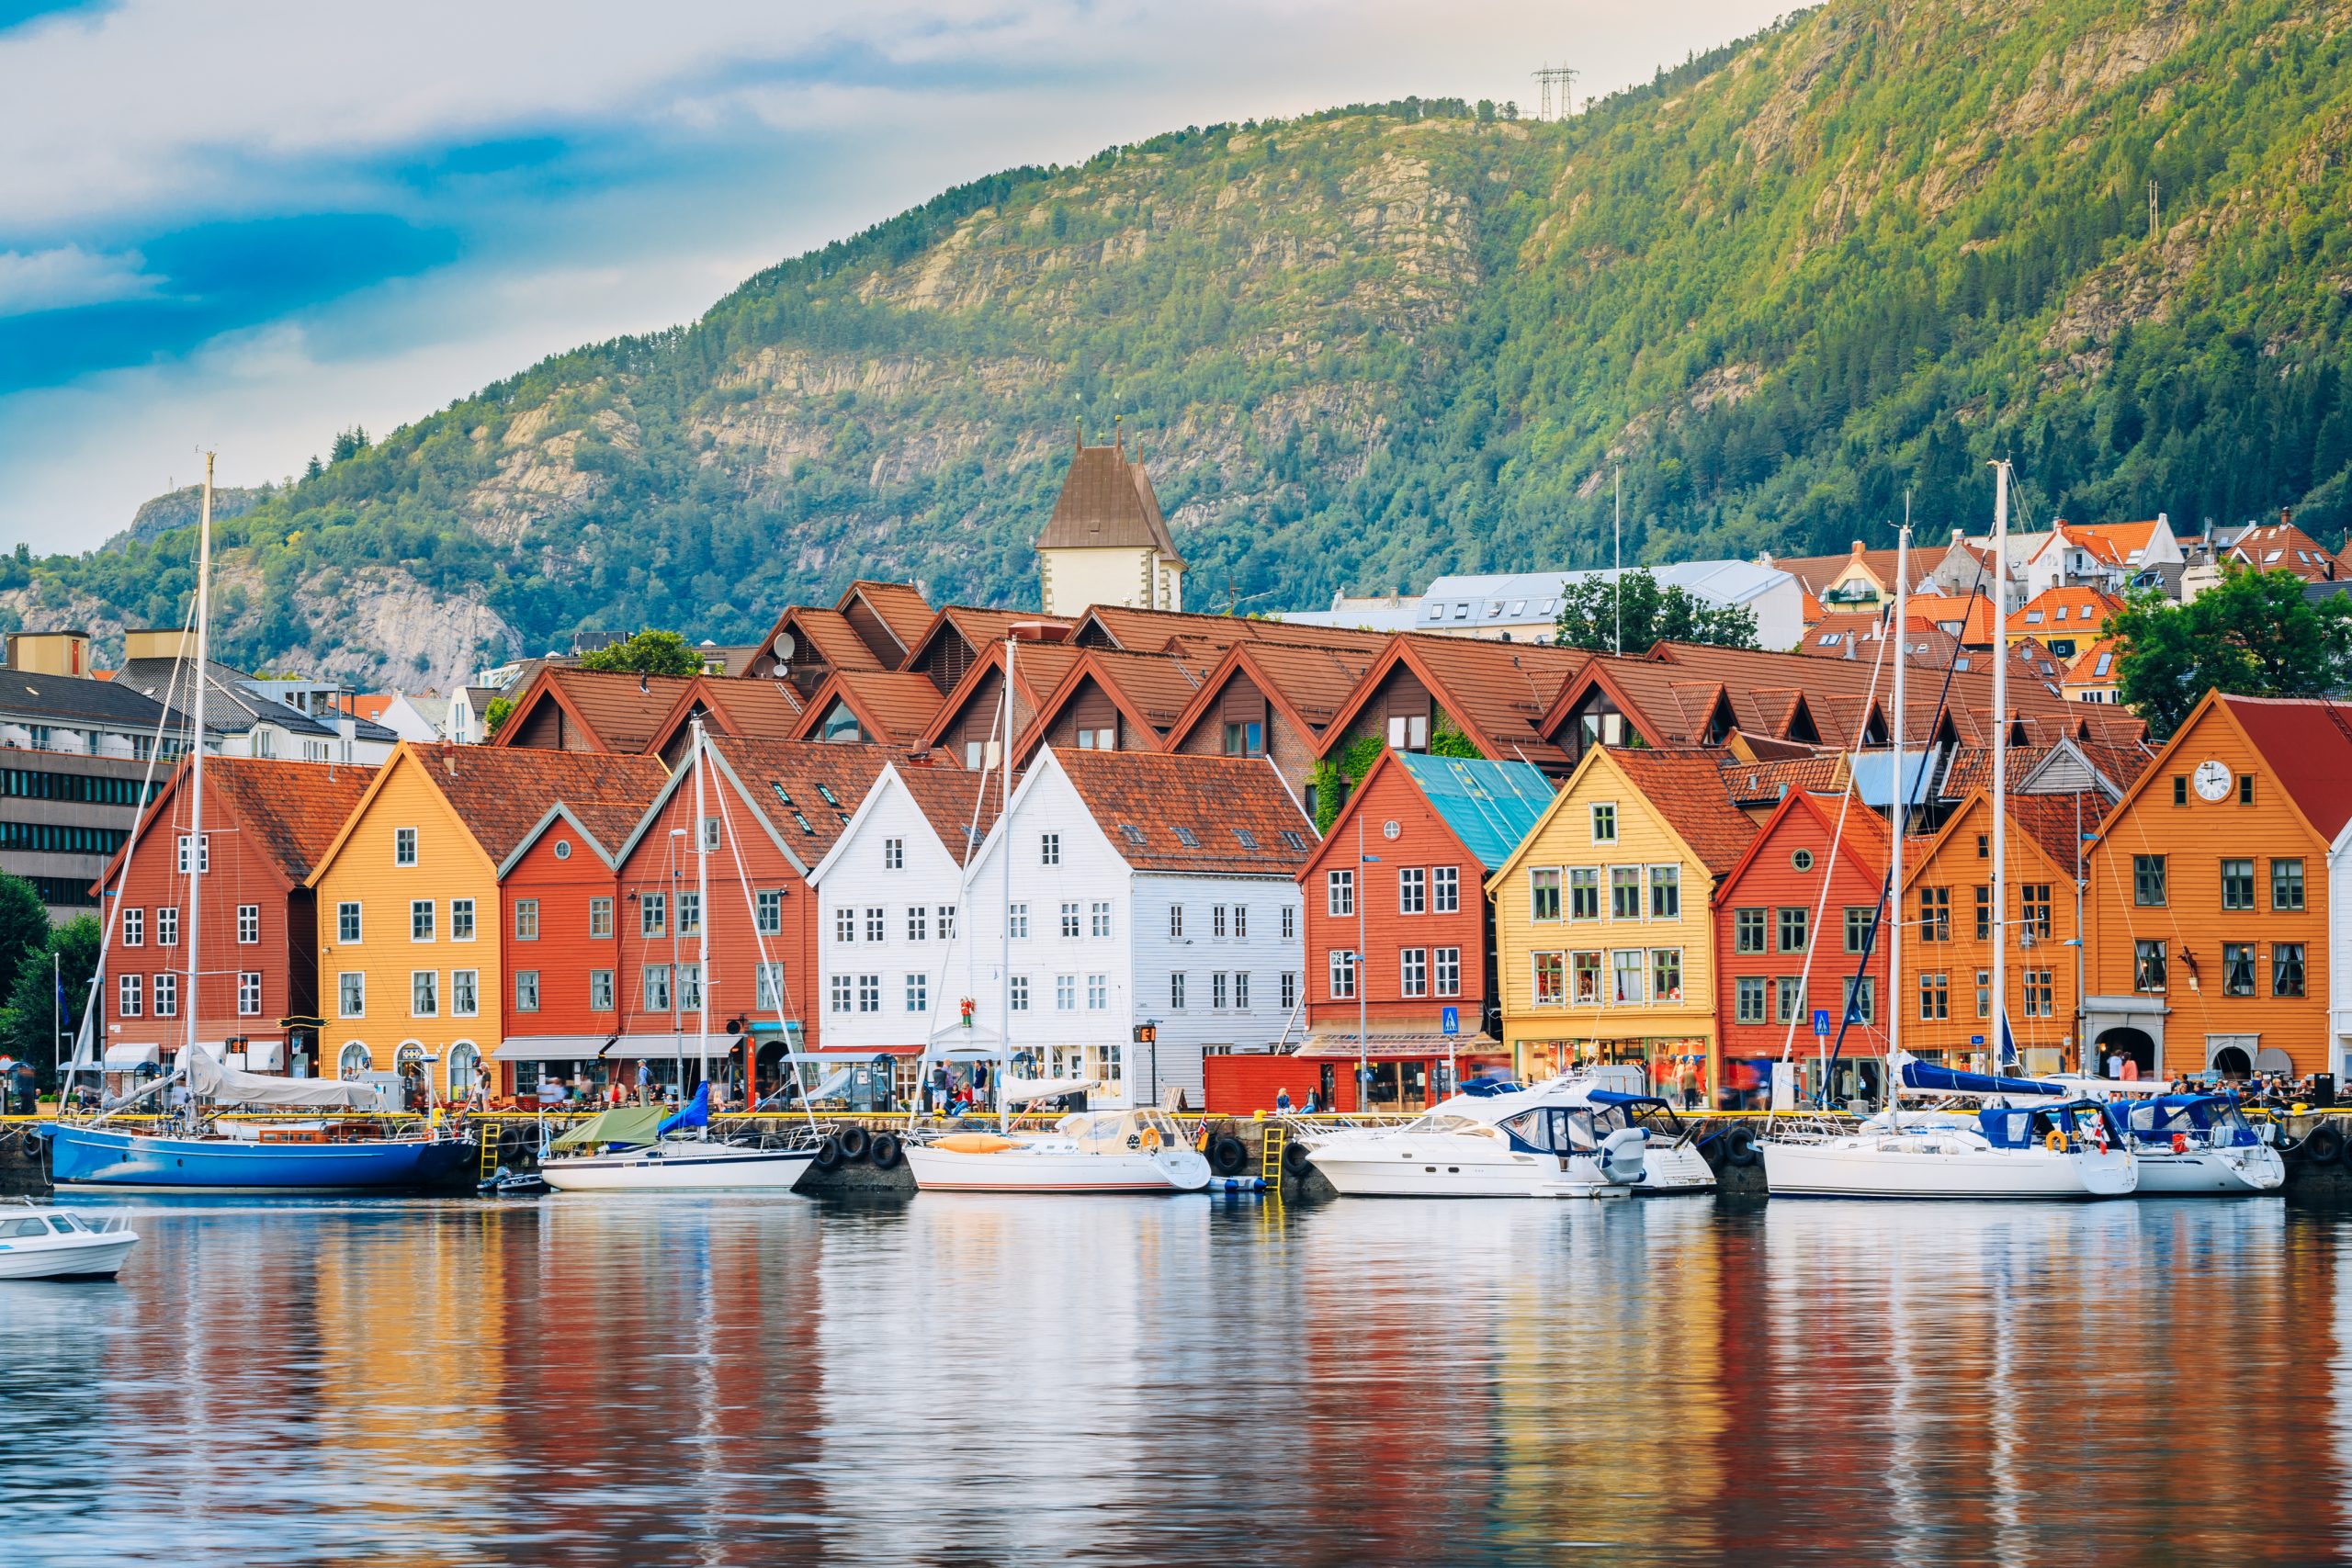 Fotografi av Bryggen i Bergen. Gamle trehus i ulike farger ligger ved en kai med seilbåter.